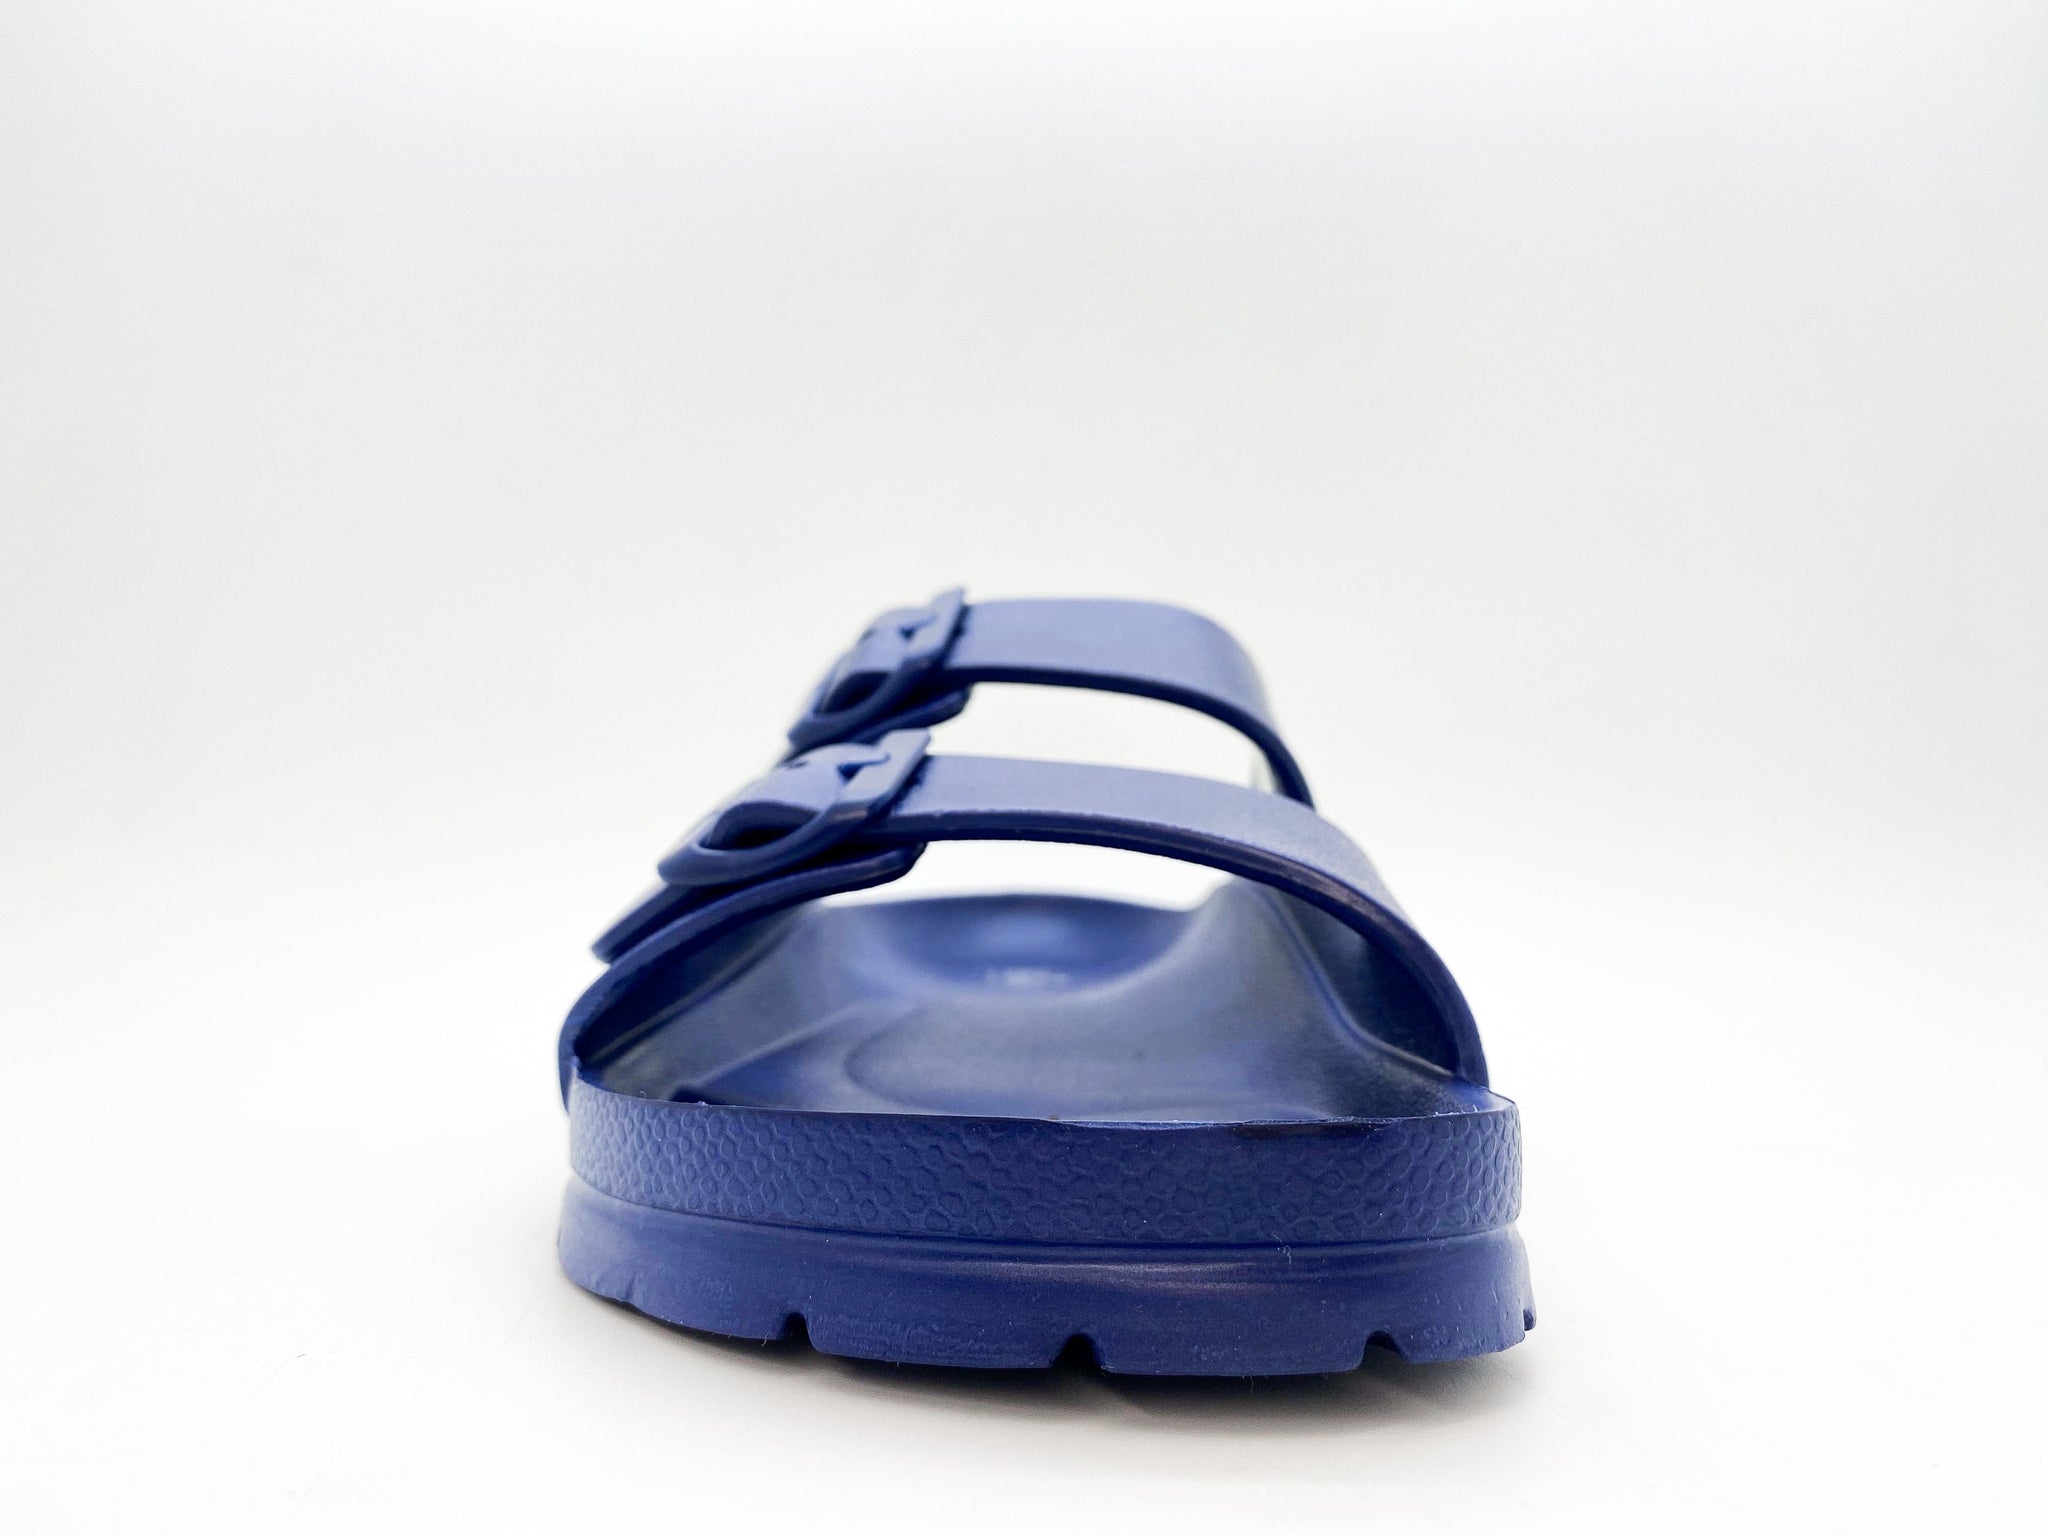 NAT 2 fodtøj thies 1856 ® Ecofoam Sandal marineblå bæredygtig mode etisk mode